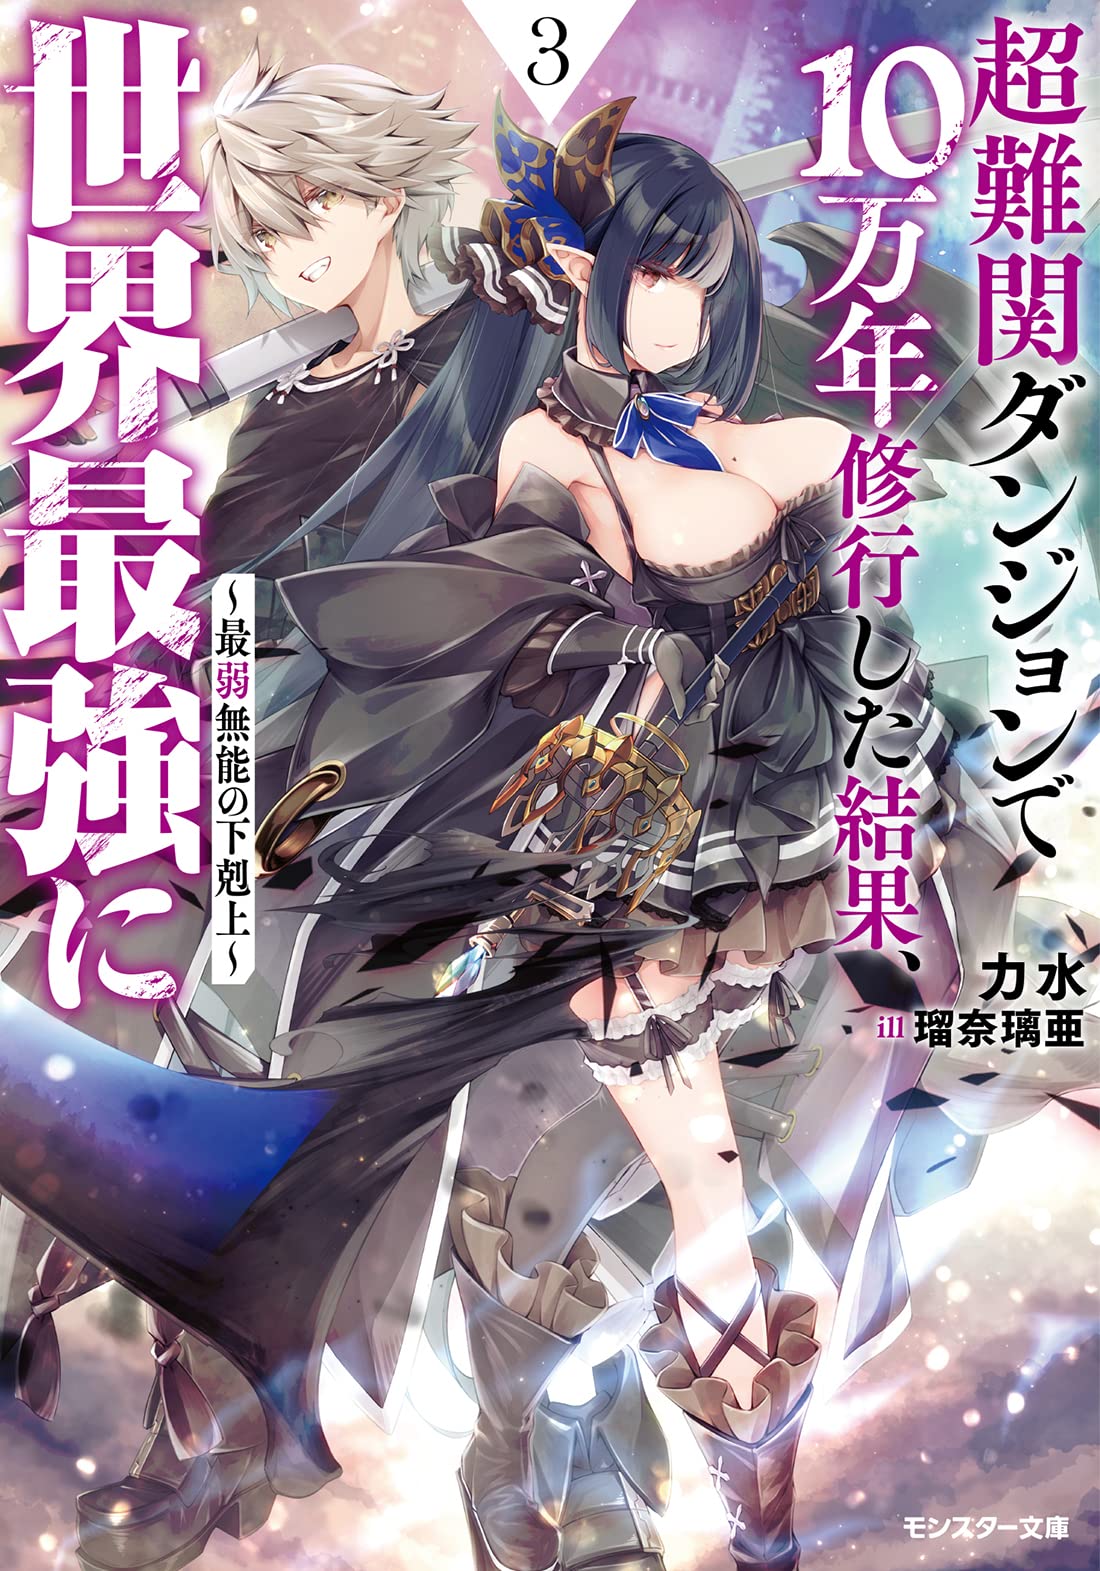 Light novel de 'DanMachi' ultrapassa as 5 milhões de unidades no Japão -  Chuva de Nanquim